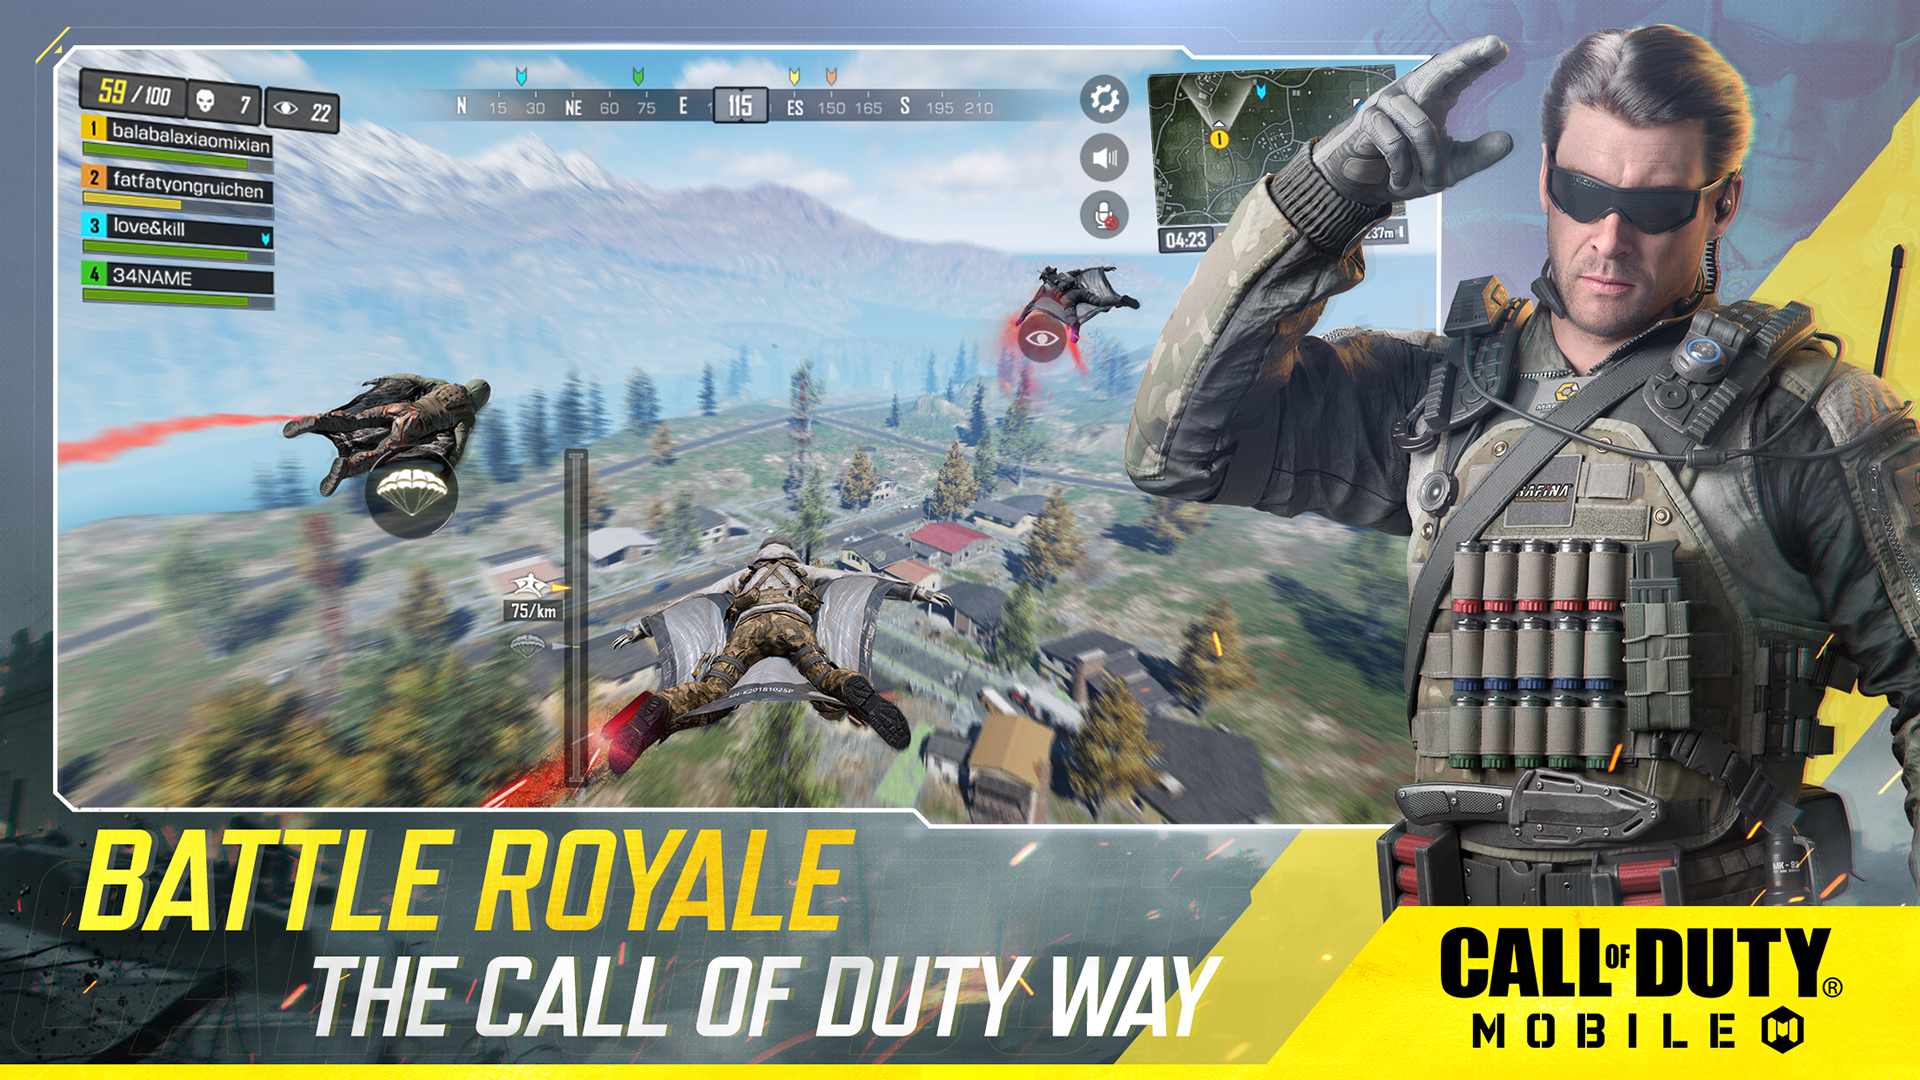 دانلود بازی کالاف دیوتی موبایل Call of Duty Mobile 1.0.34 اندروید